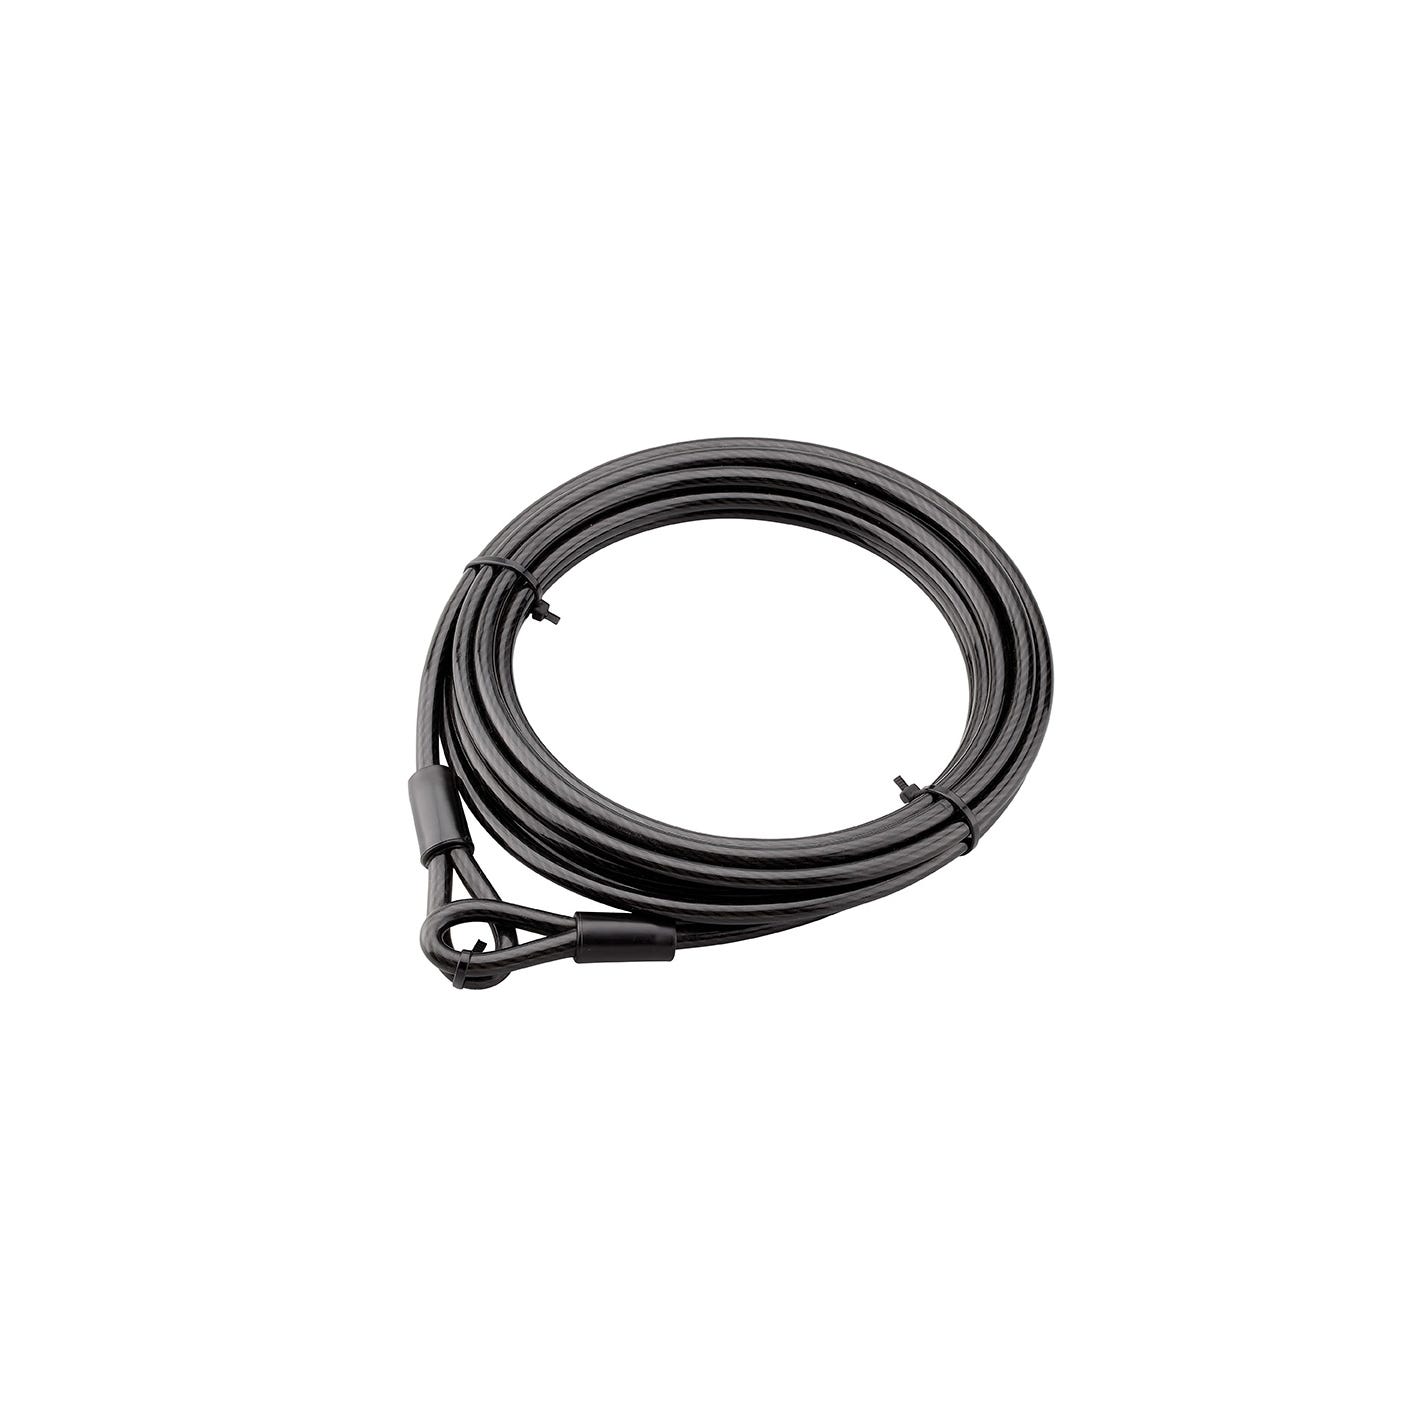 Cable antivol Diam 8 mm longueur 6 m noir 308600 Thirard 5